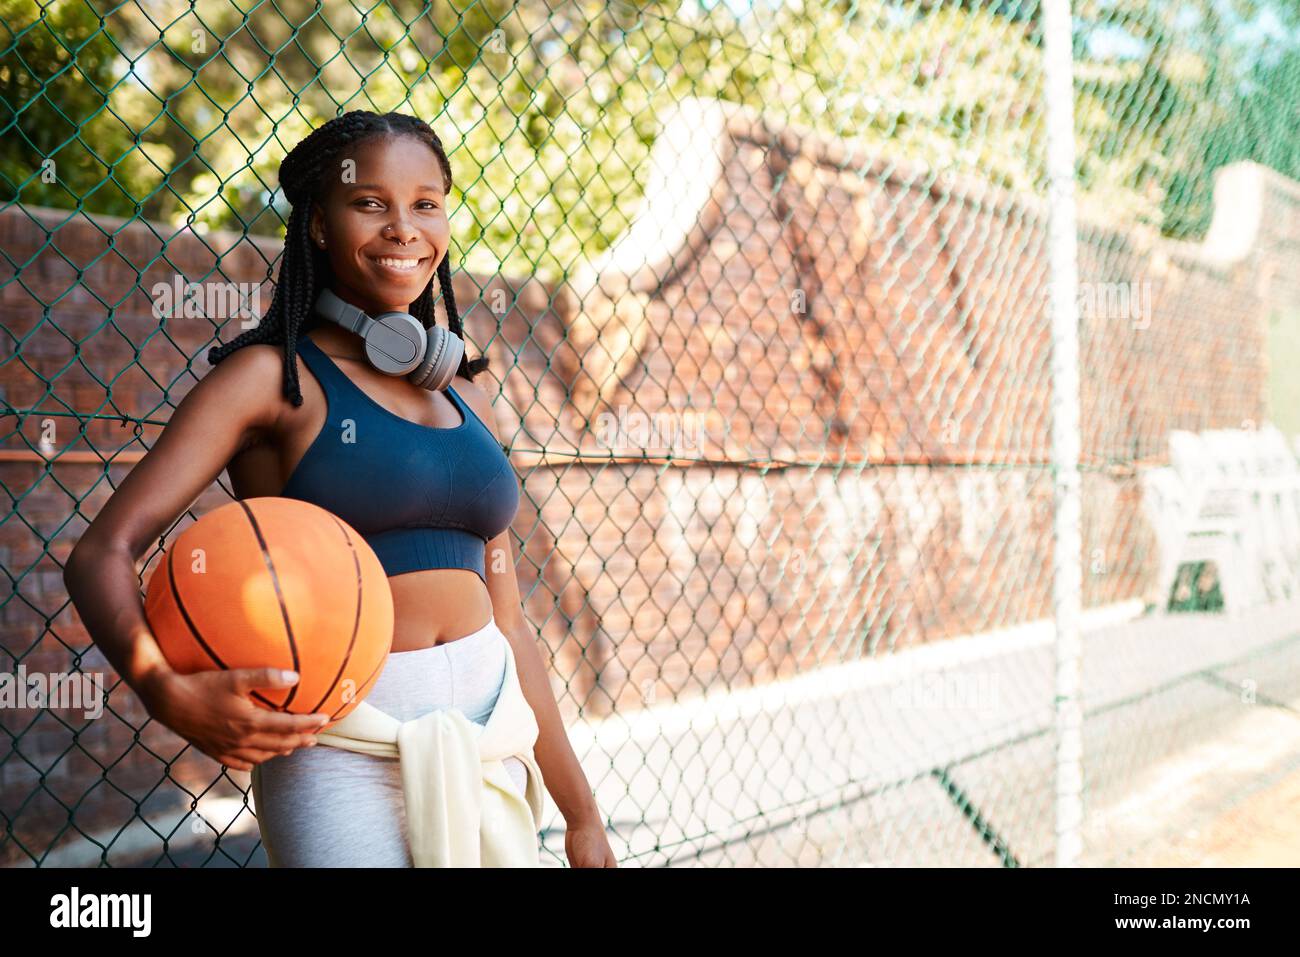 Basketball - das liegt mir im Blut. Porträt einer sportlichen jungen Frau, die im Freien einen Basketball hält und an einem Zaun steht. Stockfoto